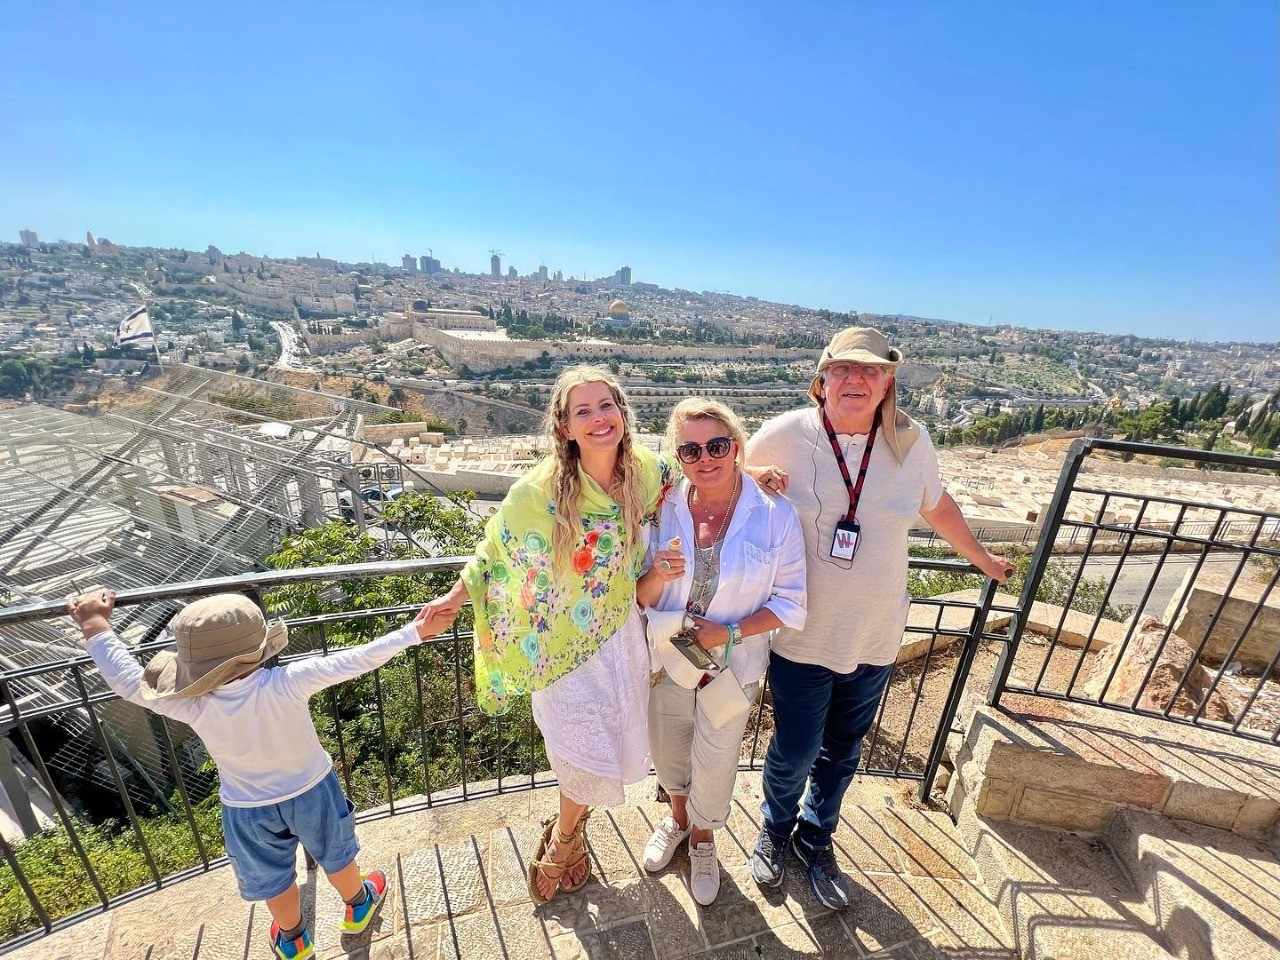 Karina Bacchi posa com os pais e o filho em Israel (Foto: Reprodução Instagram)